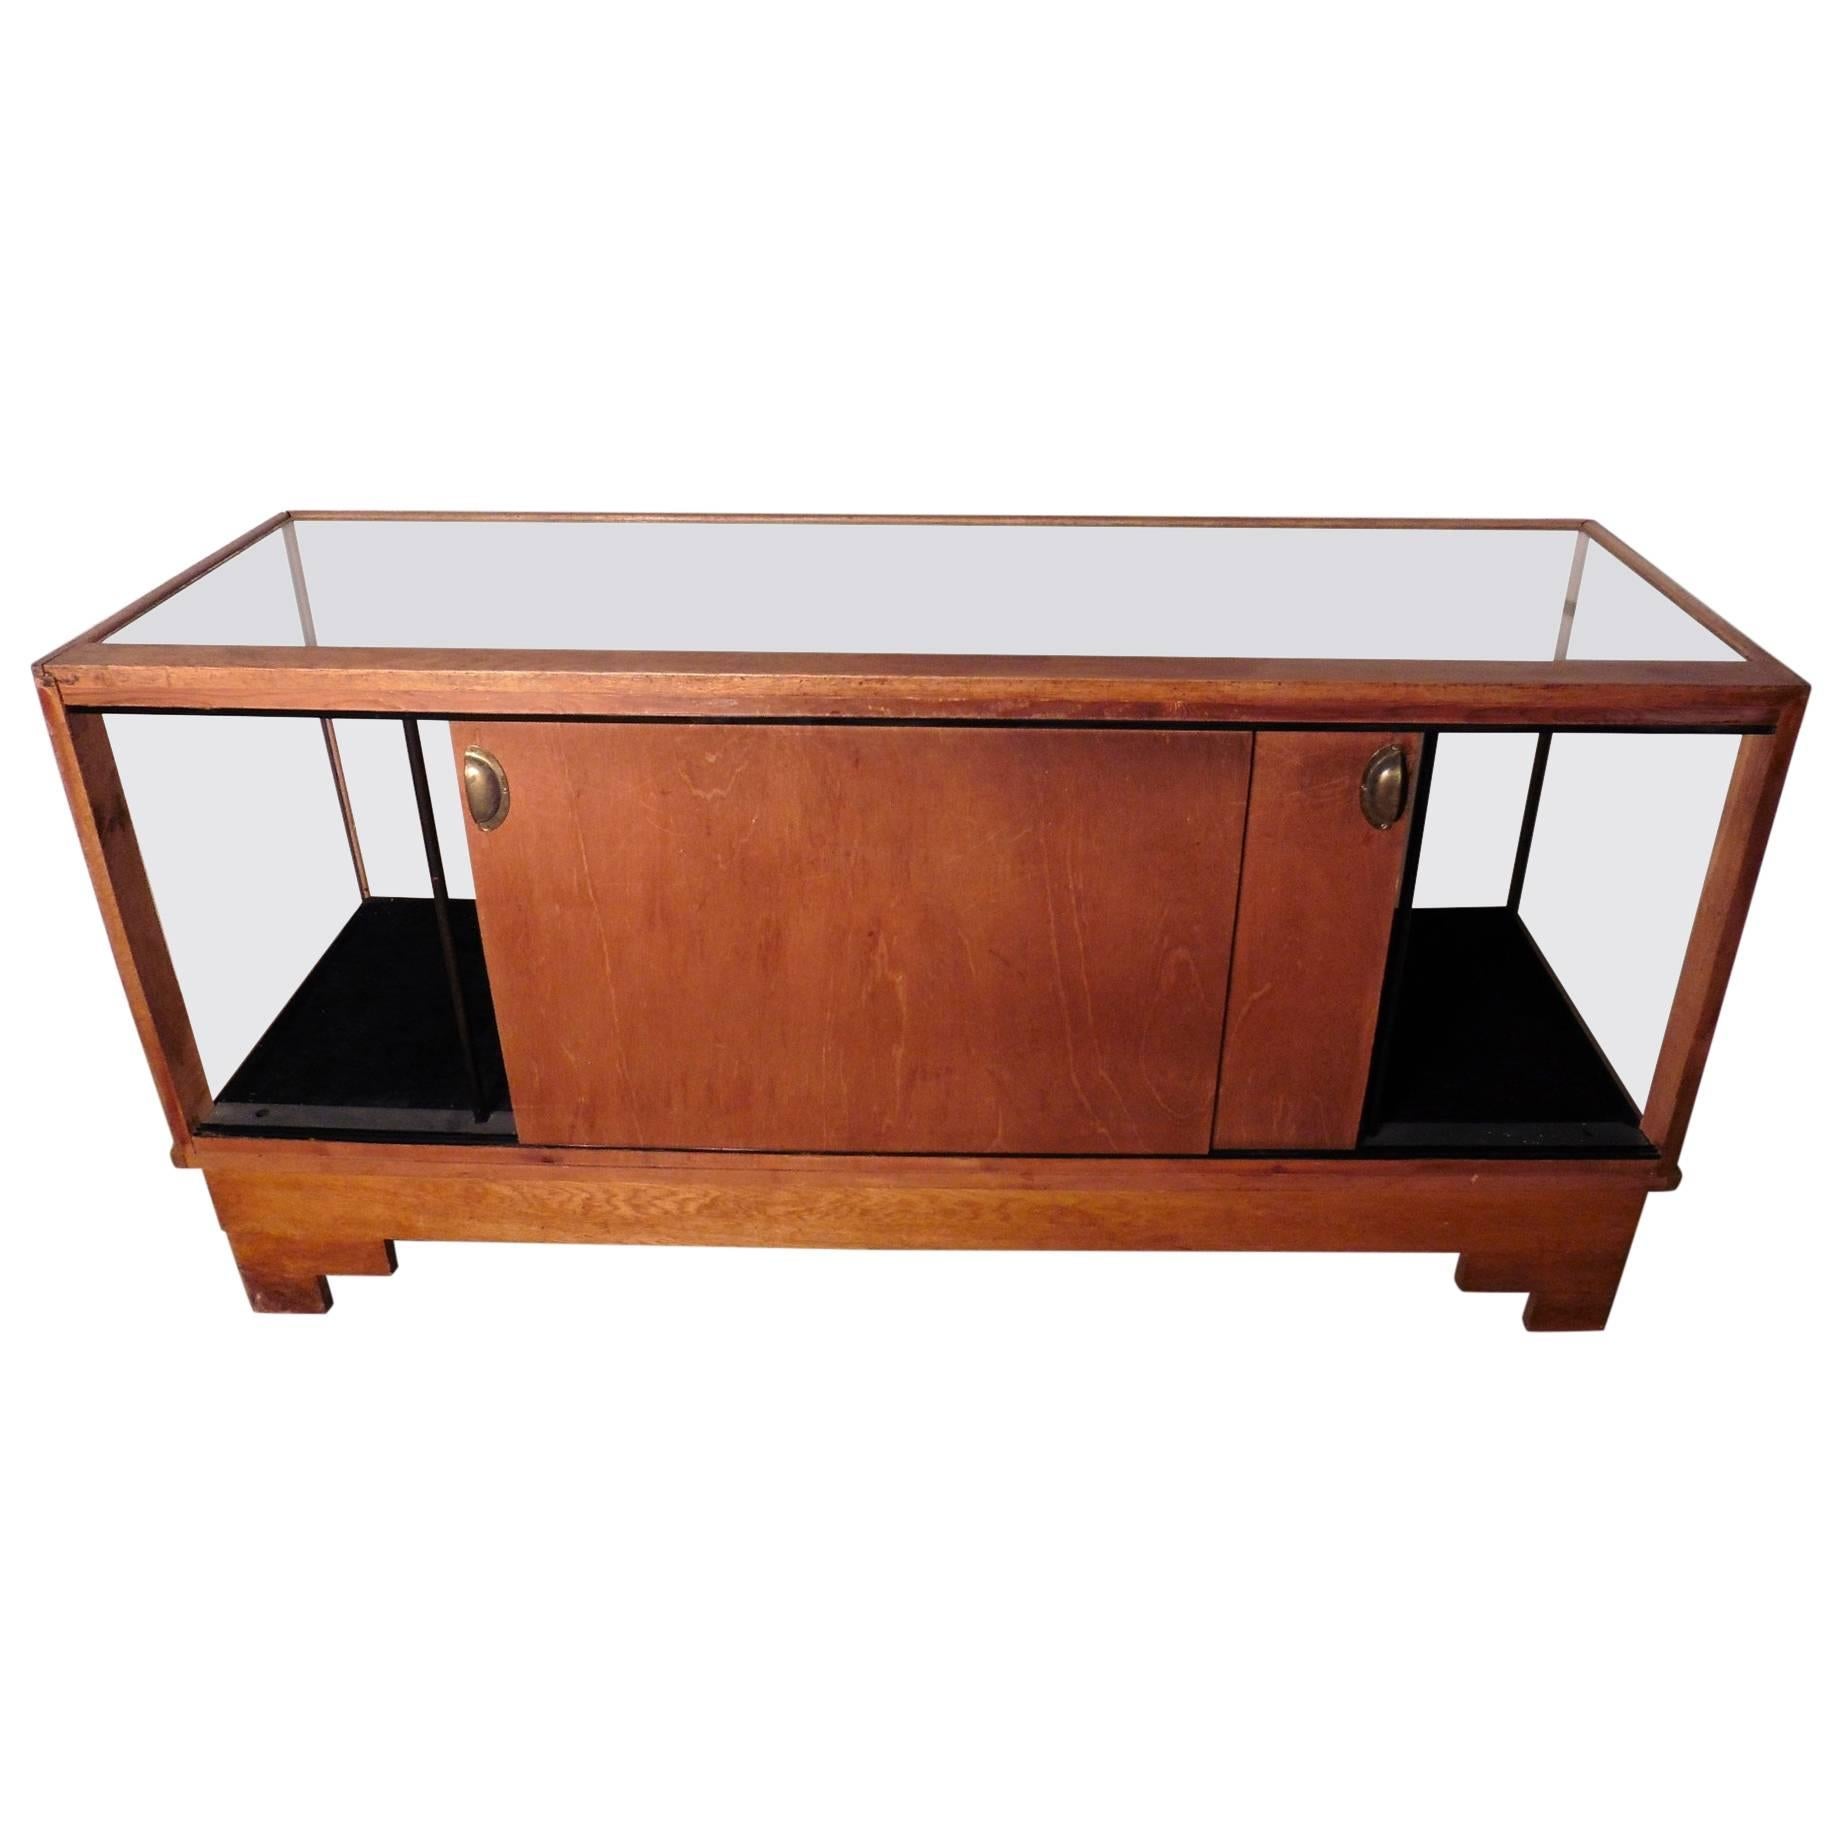 Vintage Art Deco Haberdashery Shop Counter, Golden Oak Shop Display Cabinet